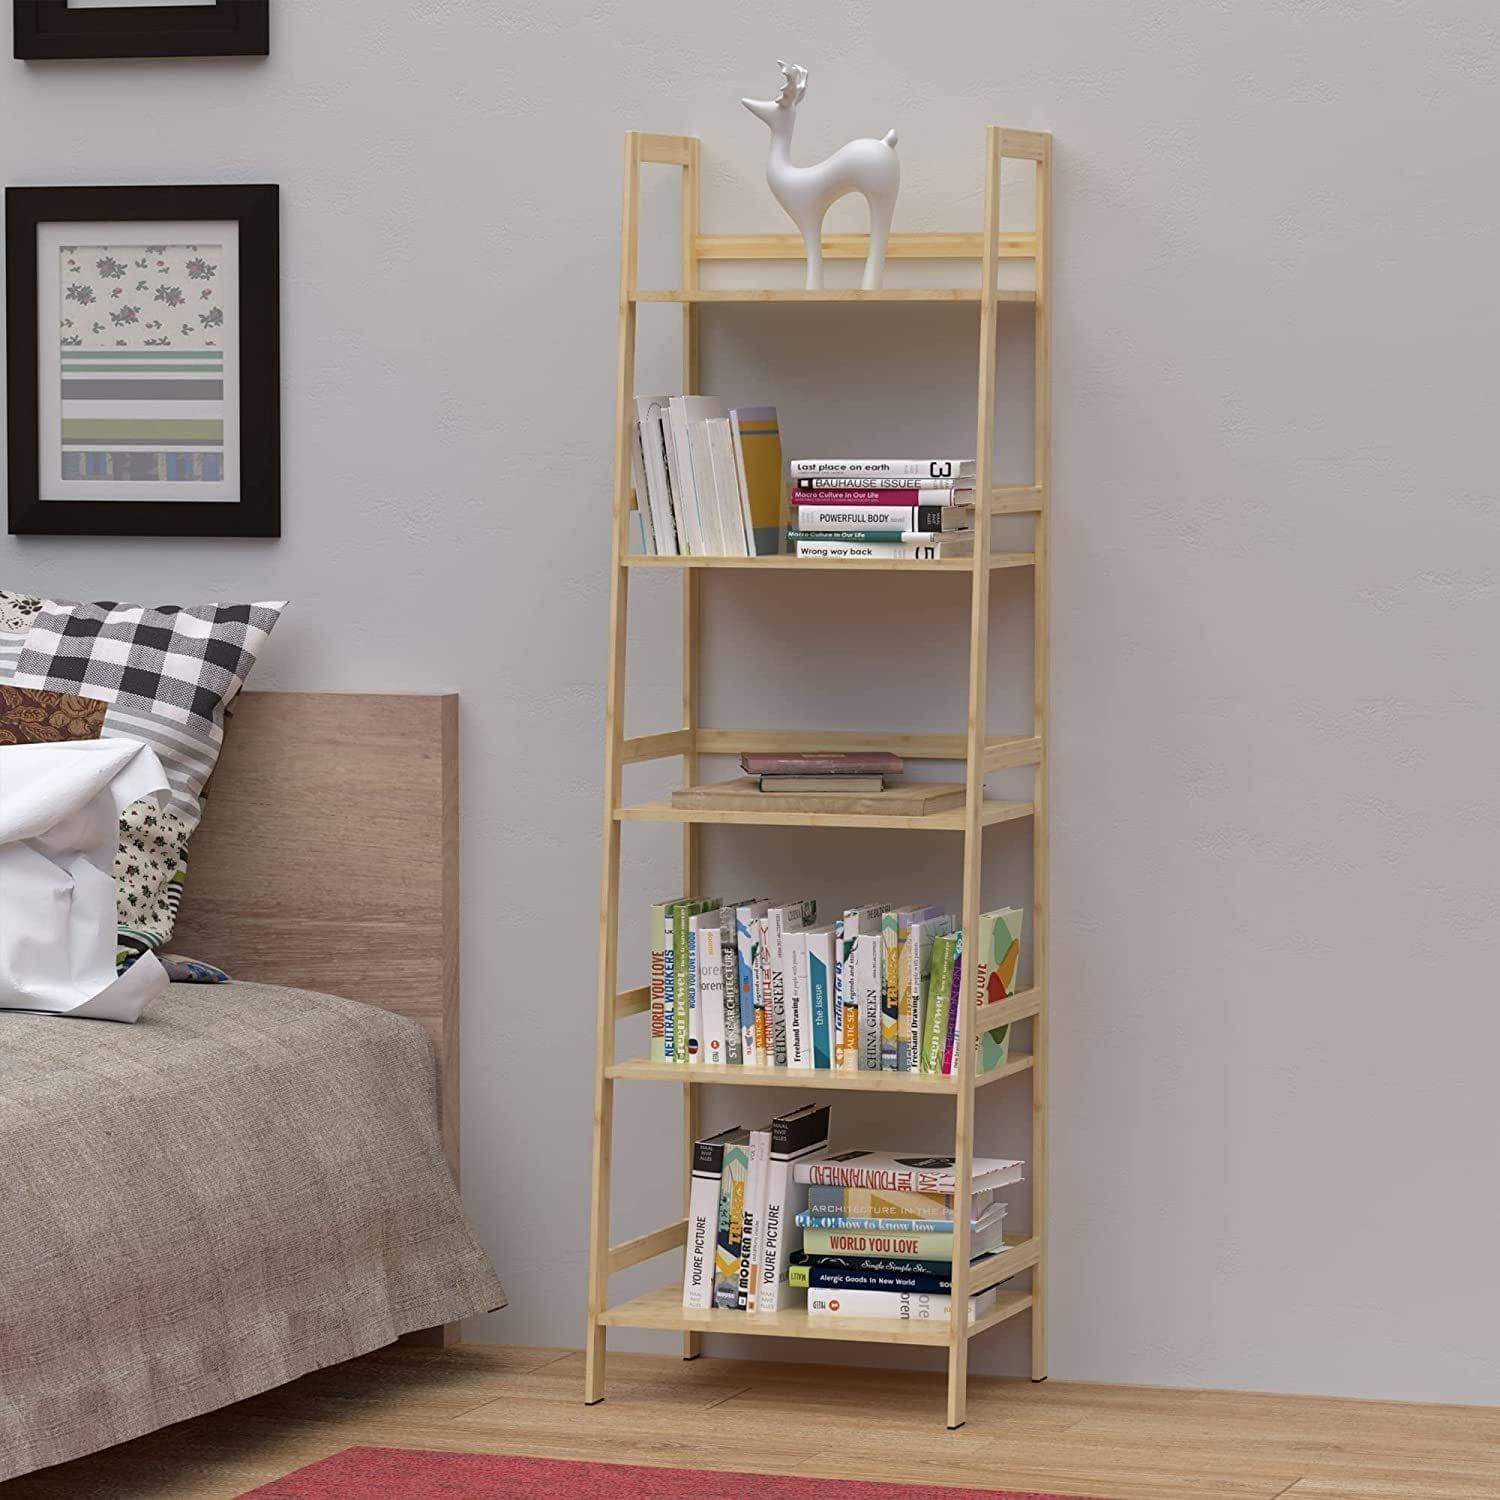 Shop Ladder Shelf, 5 Tier Bamboo Bookshelf, Modern Open Bookcase for Bedroom, Living Room, Office, Natural Mademoiselle Home Decor